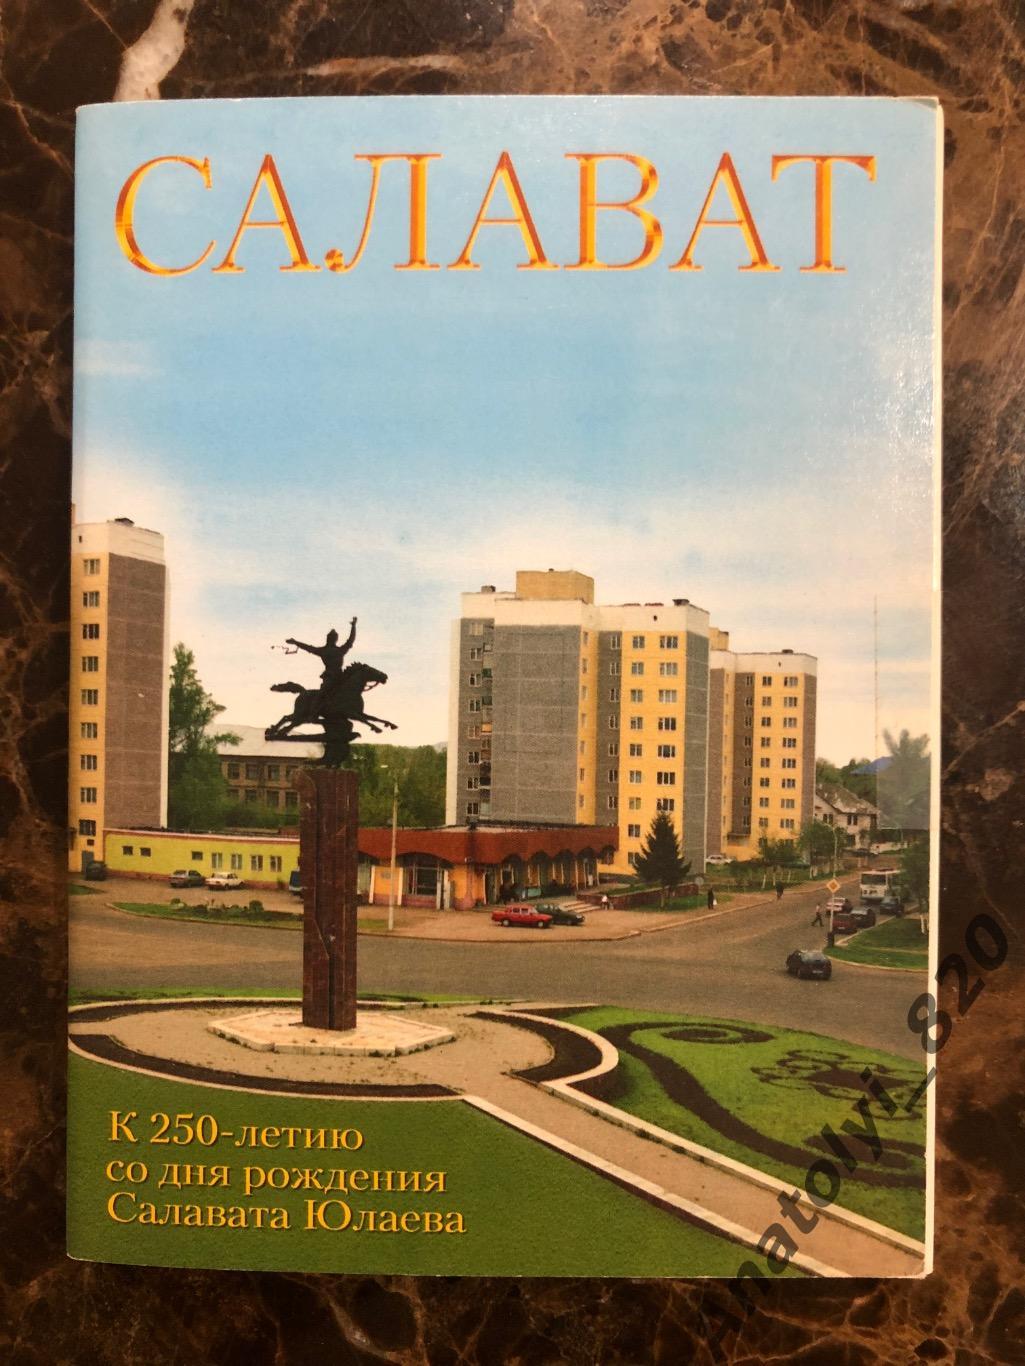 Набор открыток «К 250-летию со дня рождения Салавата Юлаева», Салават 2004 год